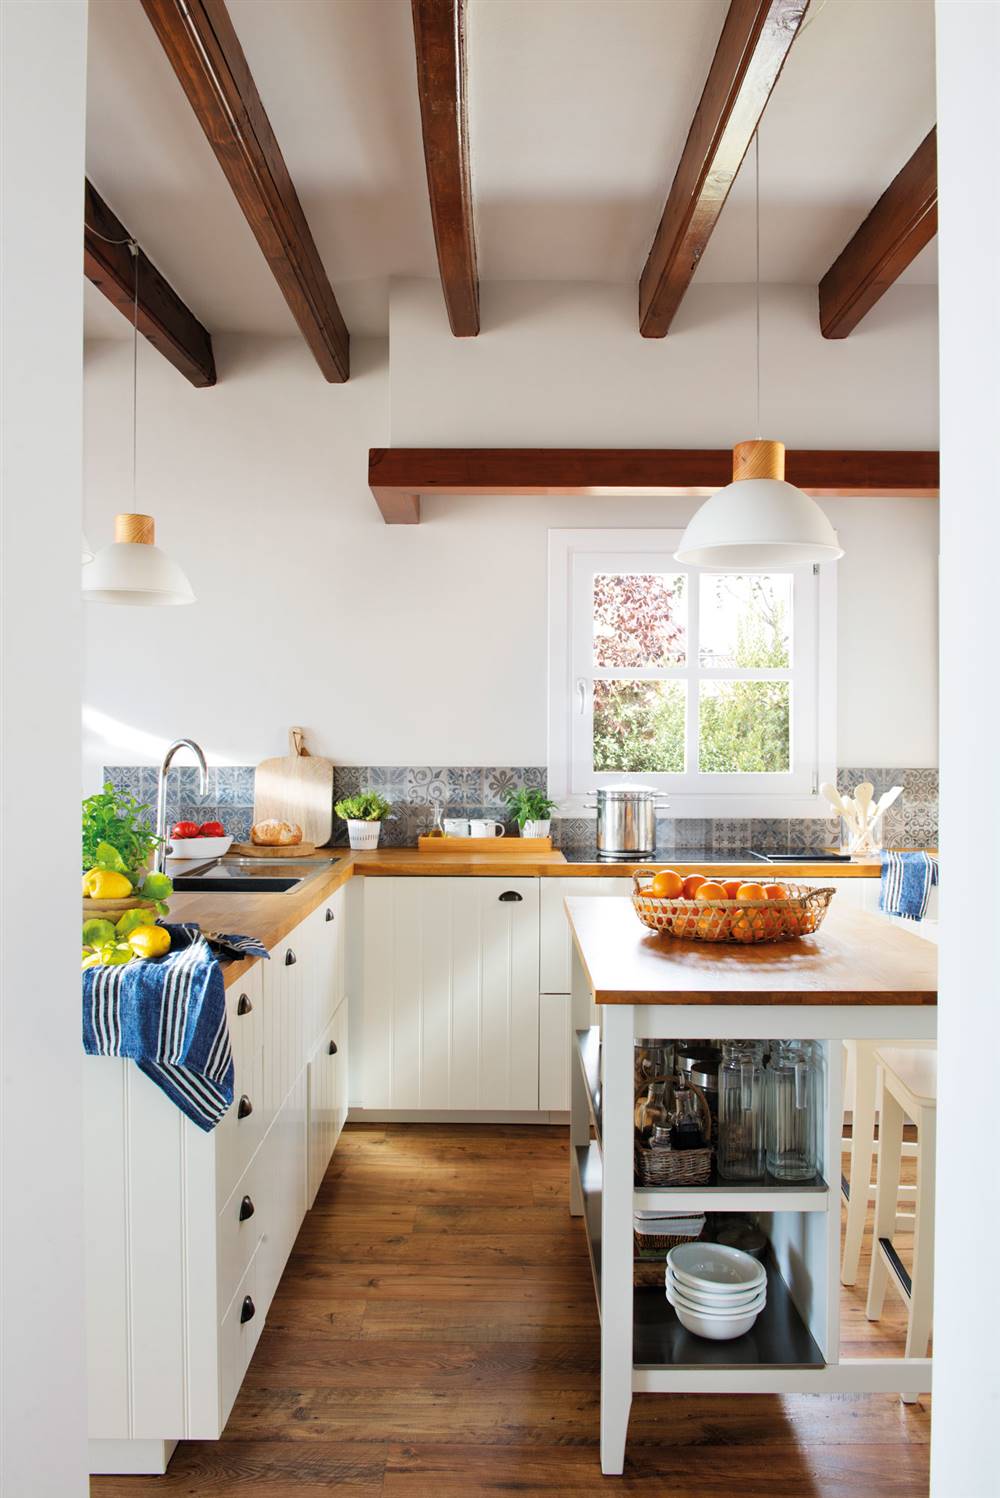 Cuánto cuesta reformar la cocina: muebles blancos con encimera en madera, vigas en el techo y mueble central_482240